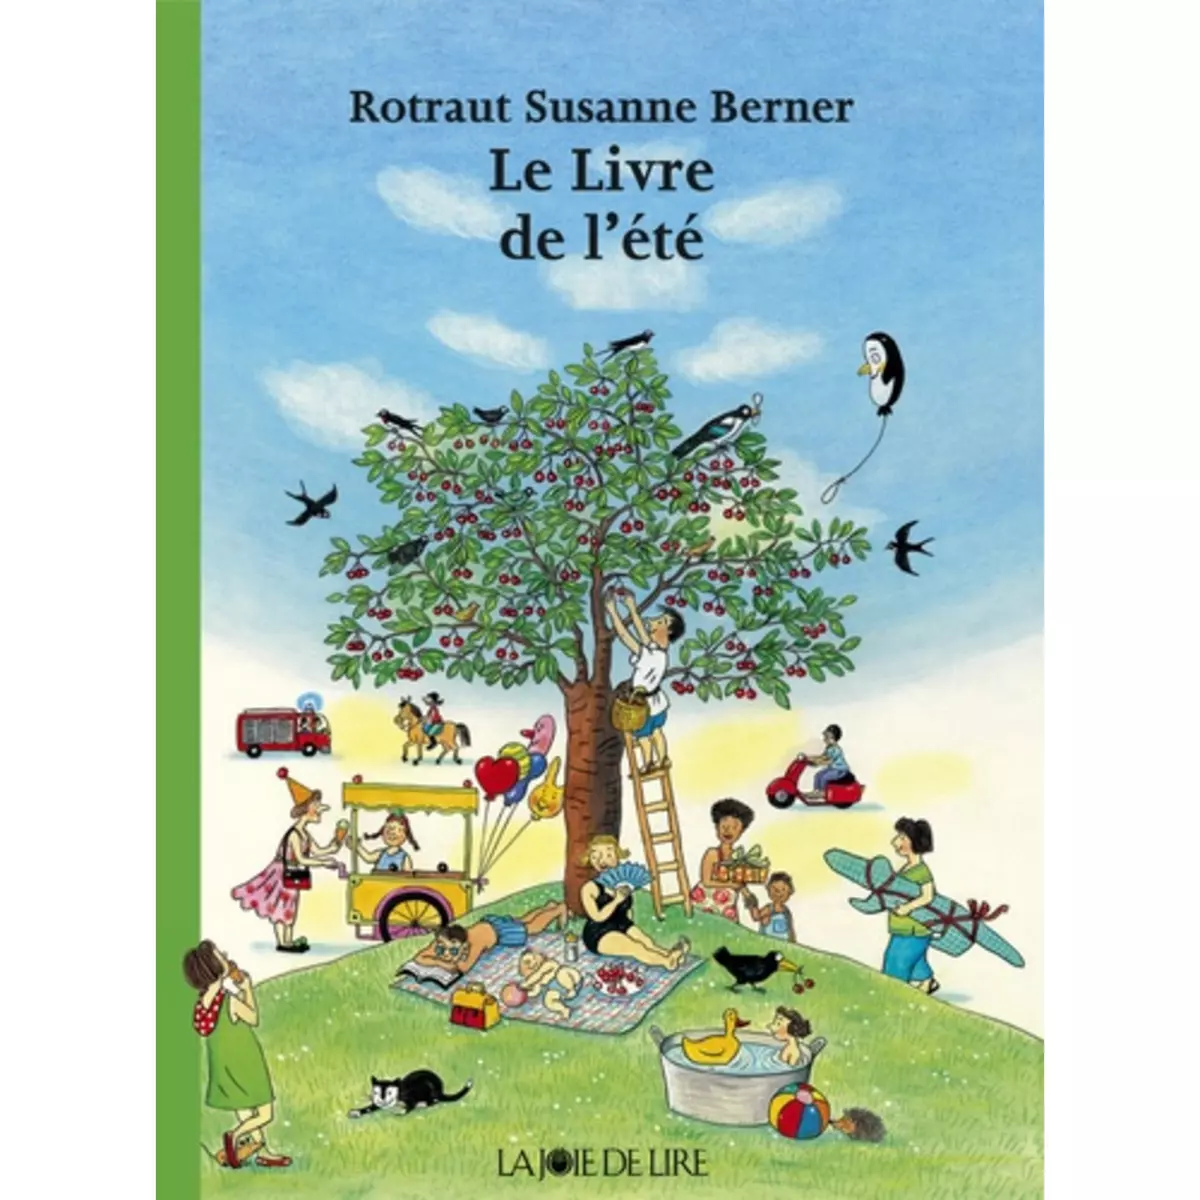  Le livre de l'été, Berner Rotraut Susanne